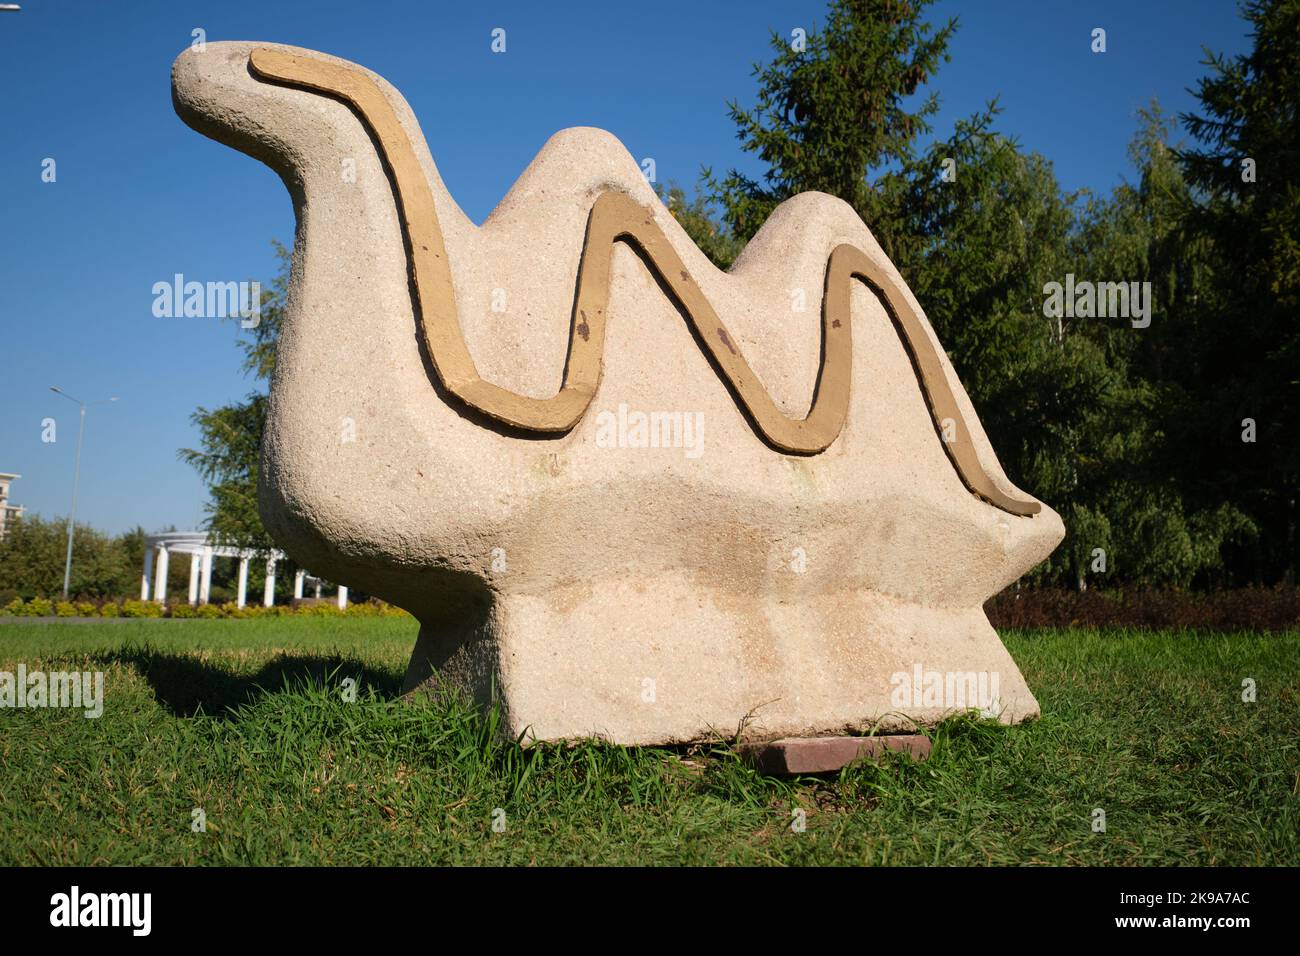 Eine witzige, dumme, niedliche Steinskulptur einer quickligen, abstrakten Schlange. Im Seasons of the Year Park in Astana, Nursultan, Kasachstan. Stockfoto